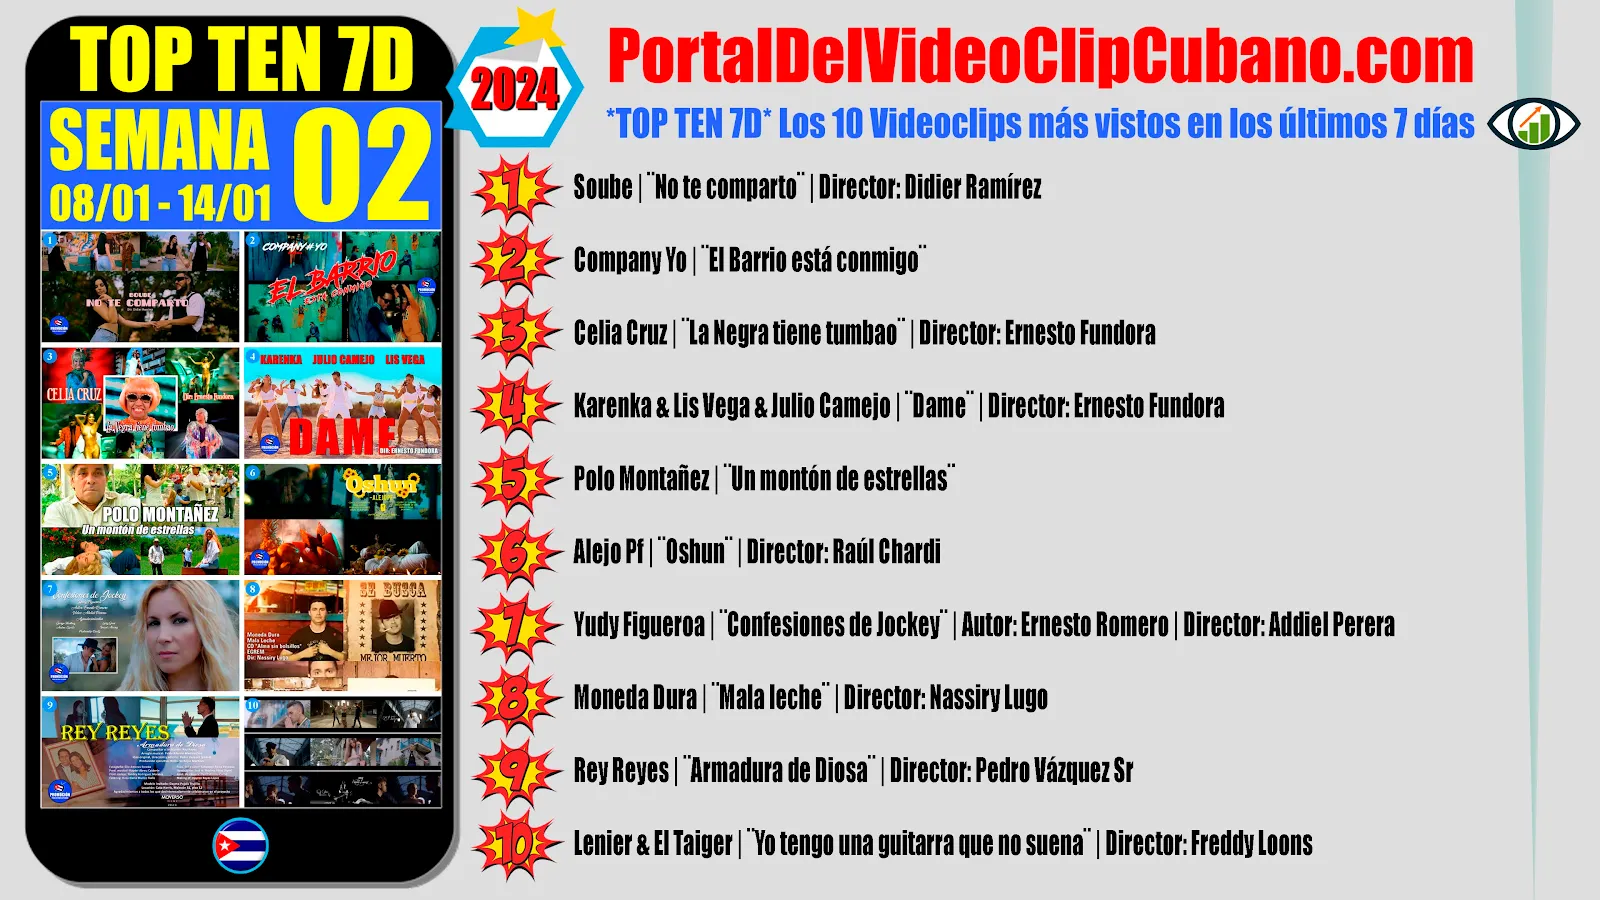 Artistas Ganadores del TOP TEN 7D ¨Los 10 Videoclips más vistos cada semana en el Portal Del Vídeo Clip Cubano¨ (SEMANA 02 del 08/01 al 15/01 de 2024)